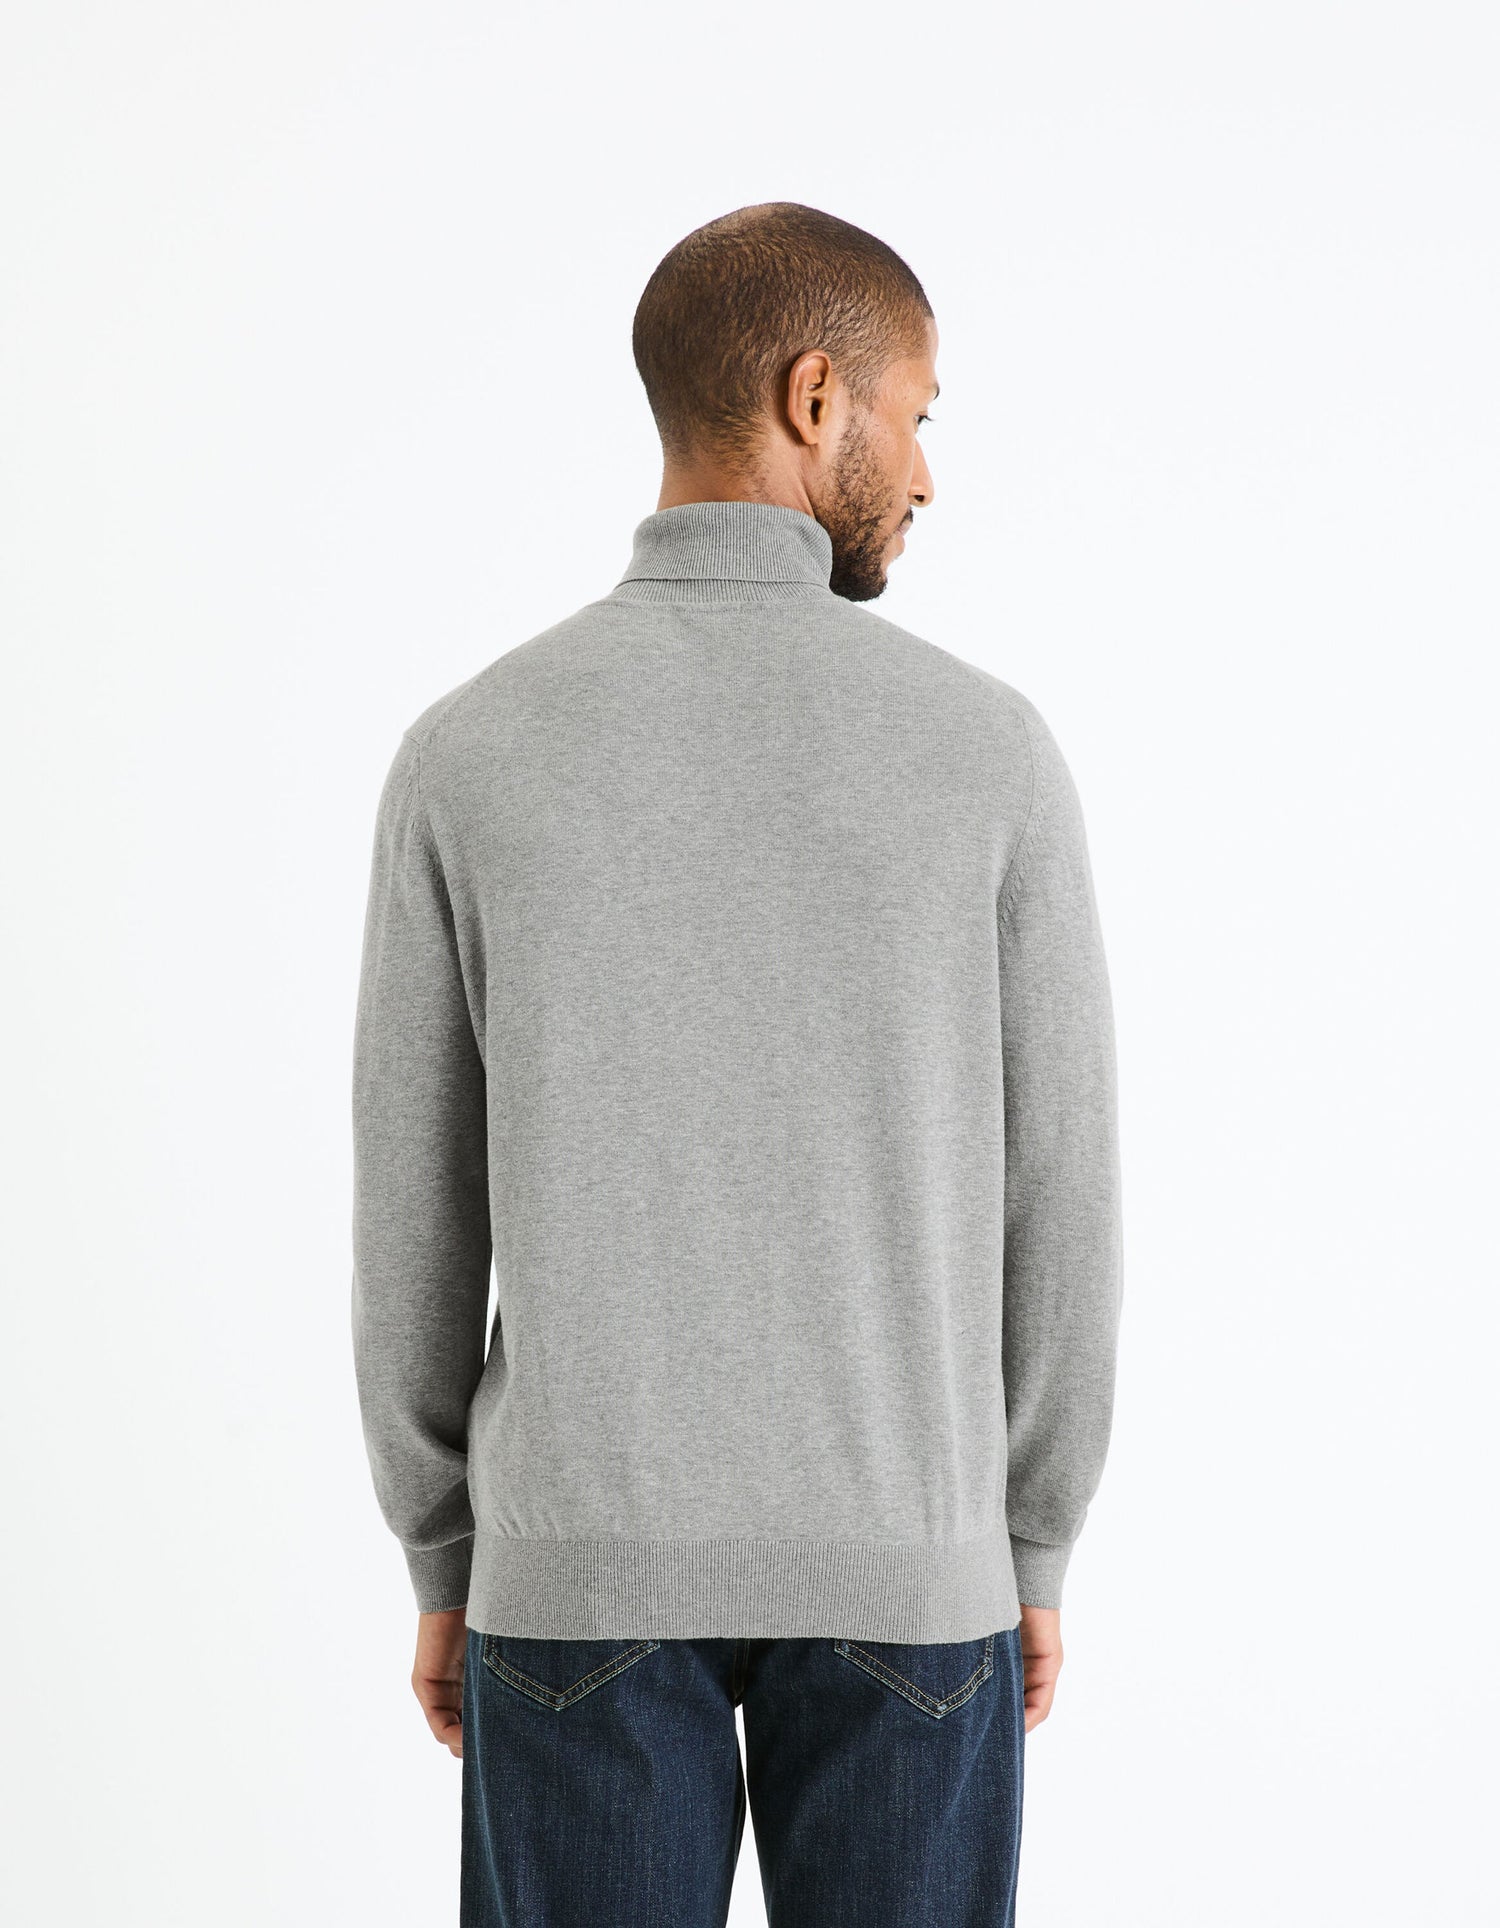 100% Cotton Turtleneck Sweater_FEROLL_GREY MEL_04